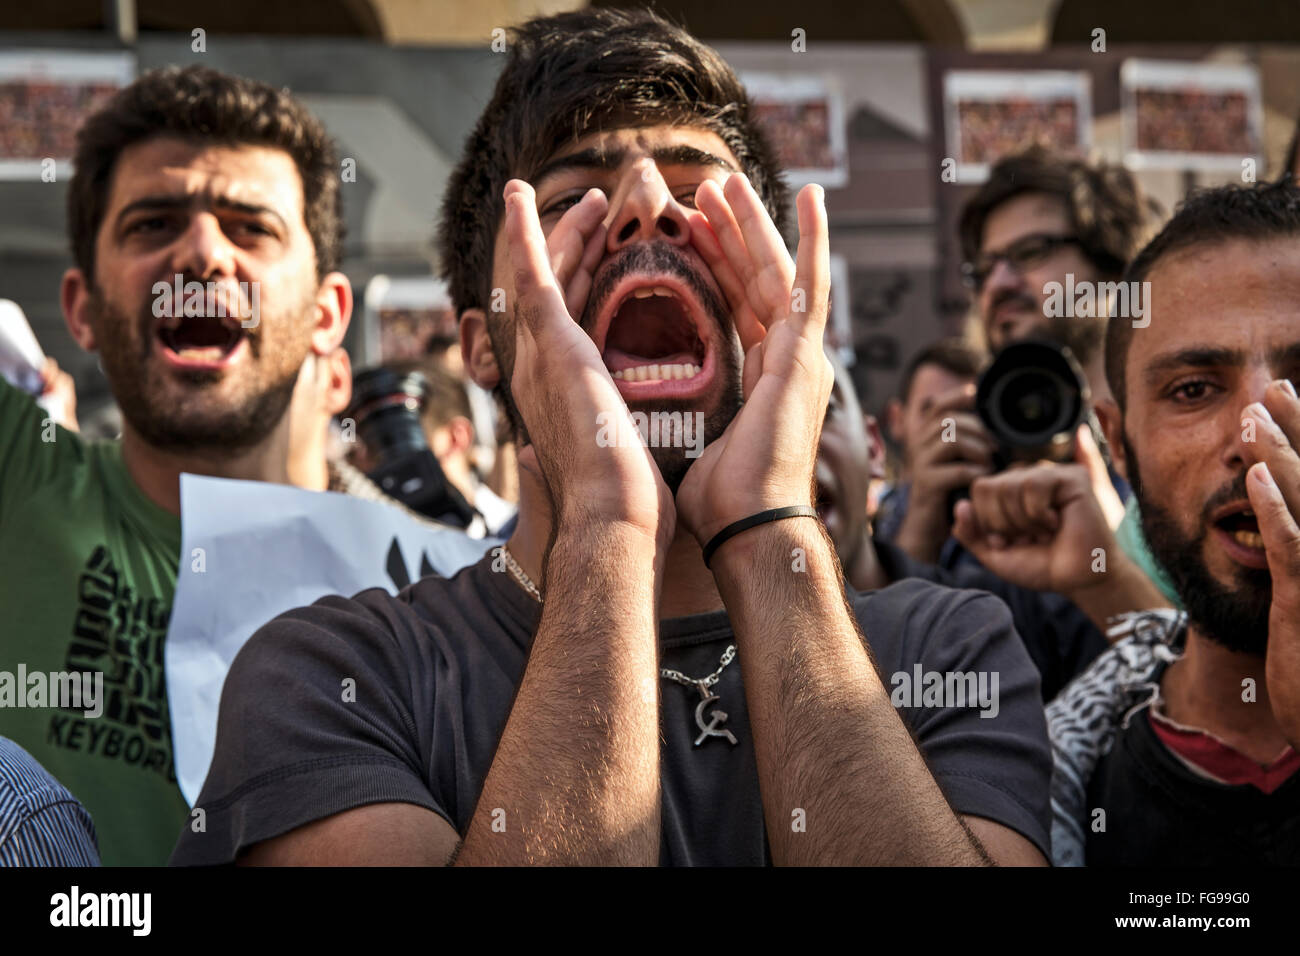 Junge Demonstranten protestieren in Downtown Beirut gegen die Änderung in der Gesetzgebung durch die Regierung. Stockfoto